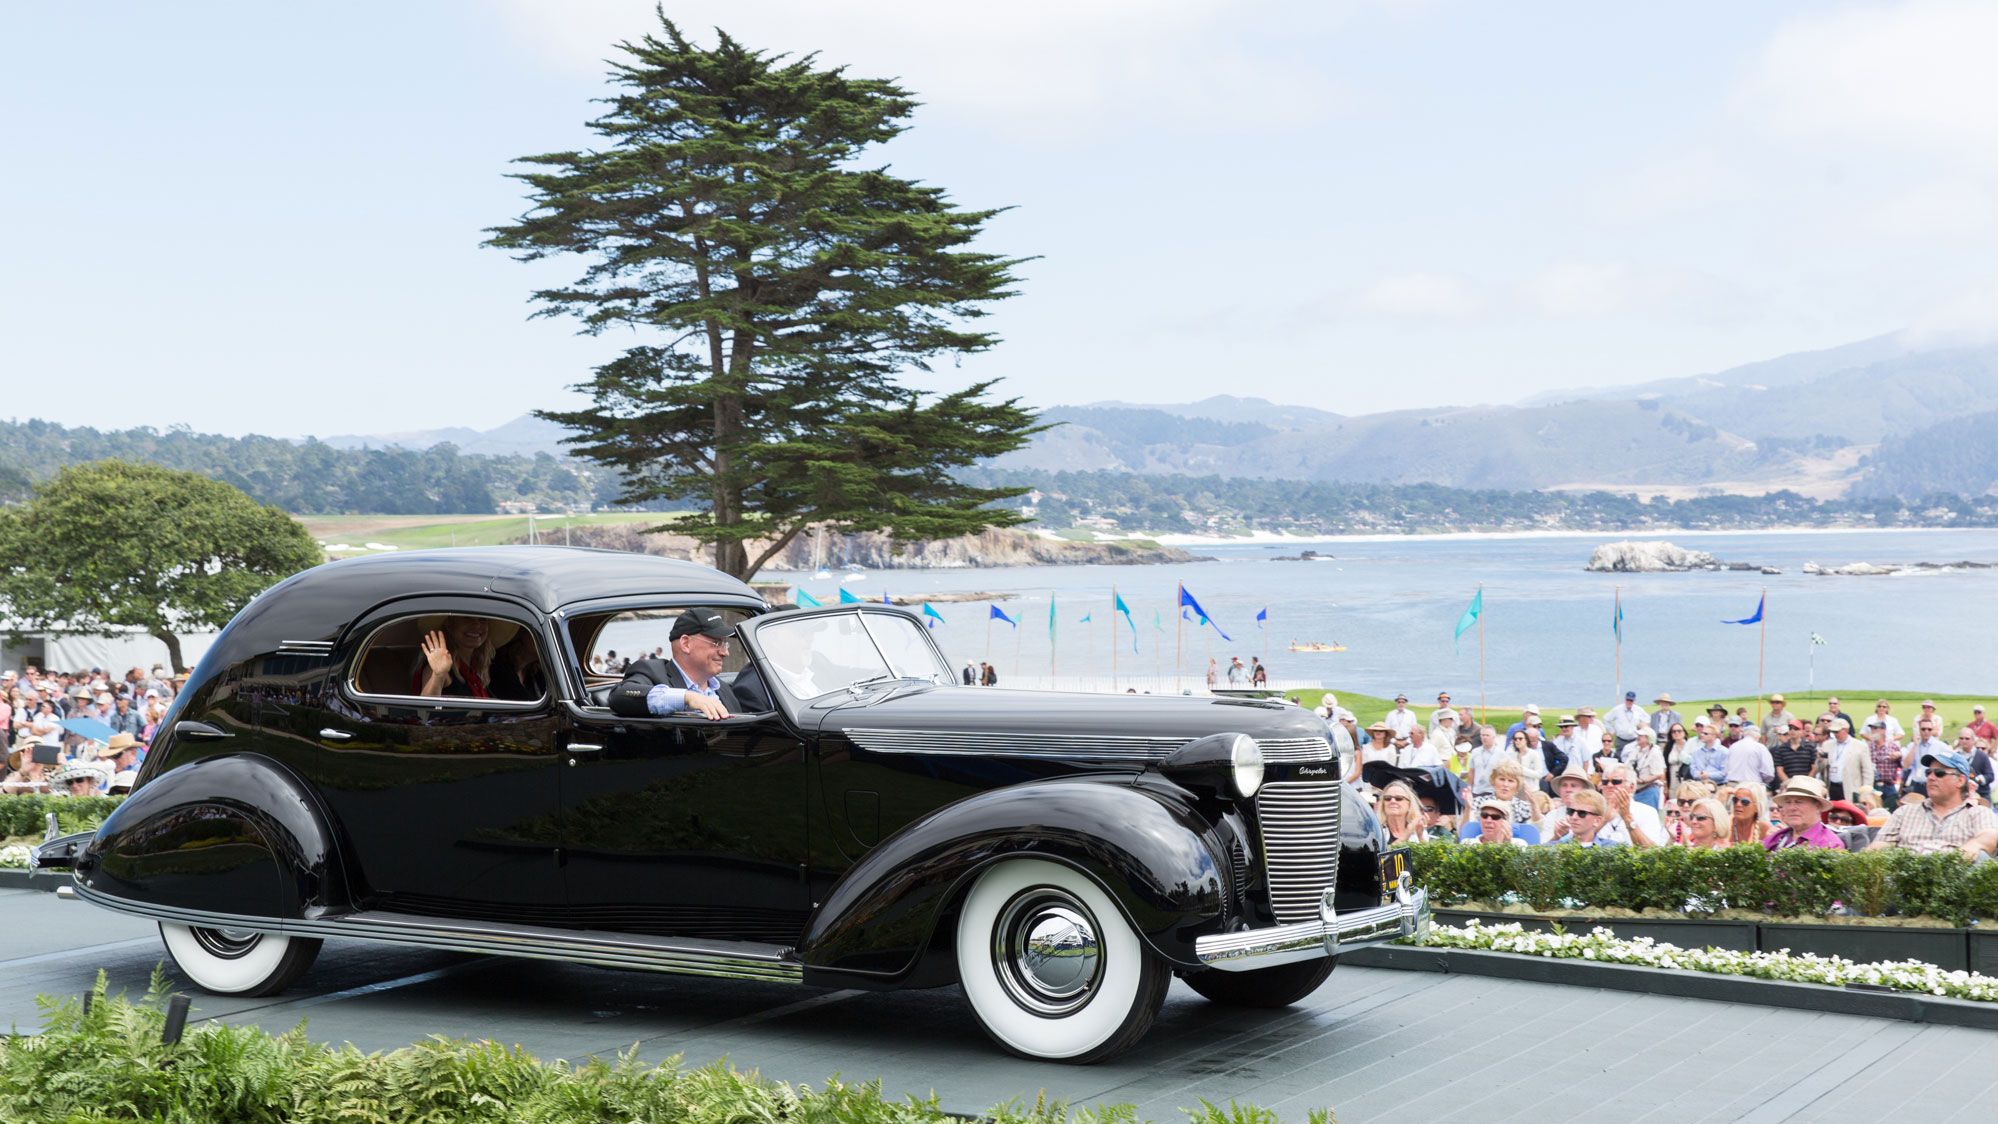 chrysler_c15_custom_imperial_lebaron_limousine_1937_for_mrs_chrysler_fvr.jpg